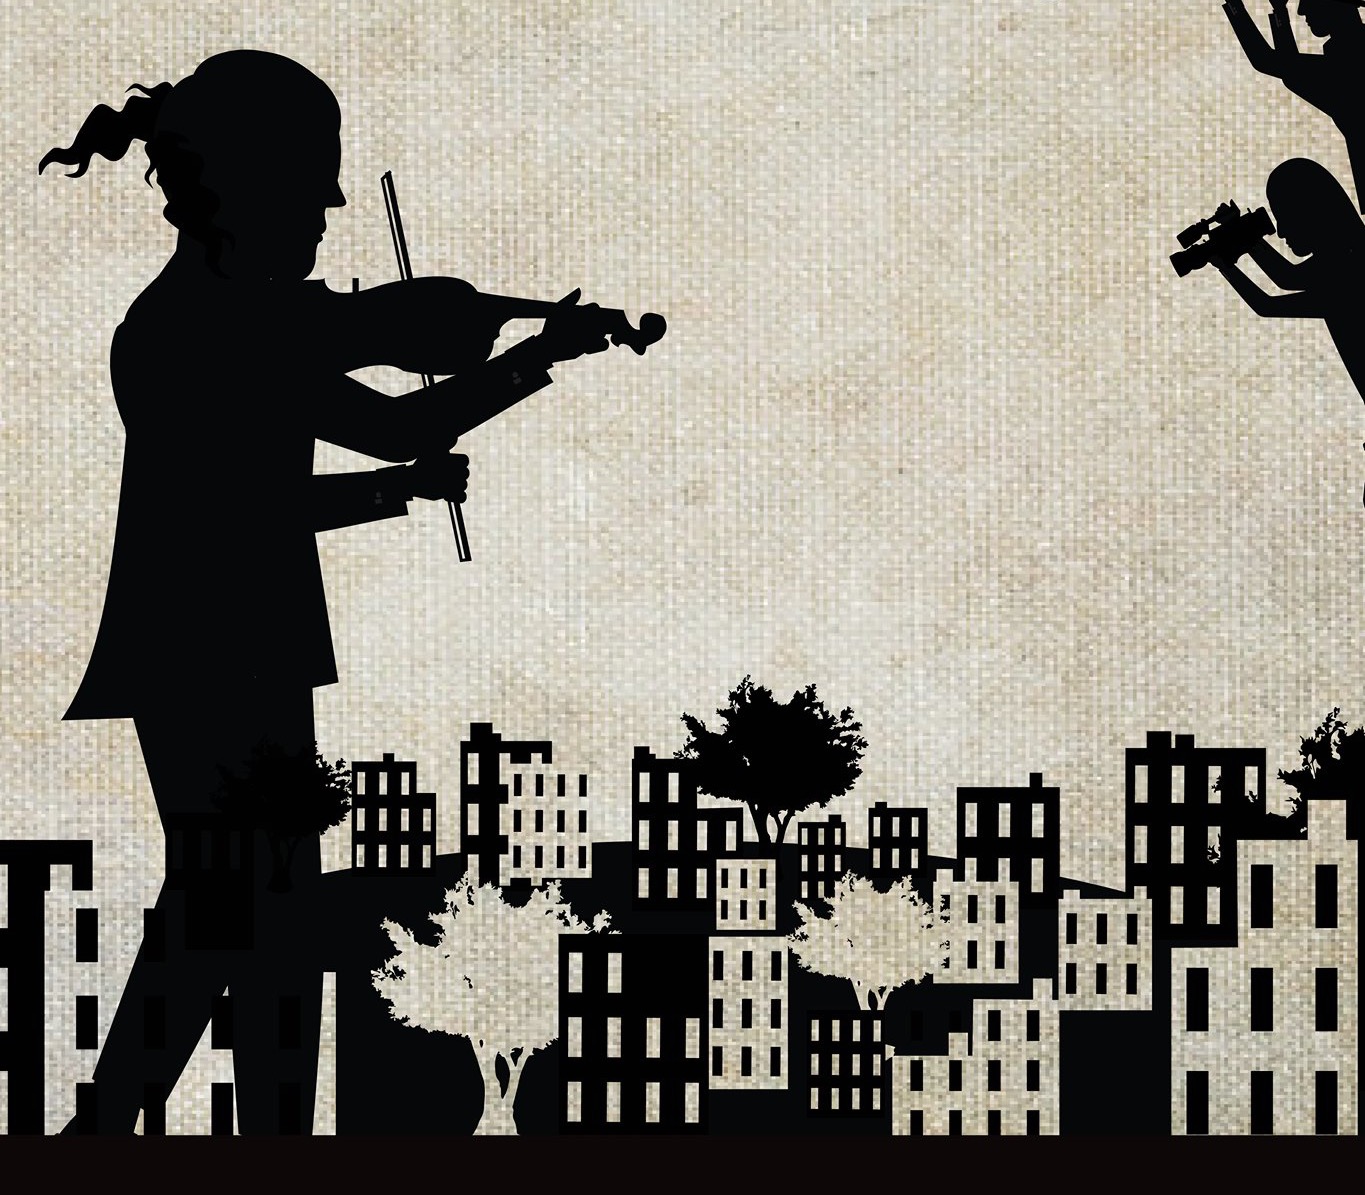 الموسيقى وفلسطين... معنى العيش والتحدّي